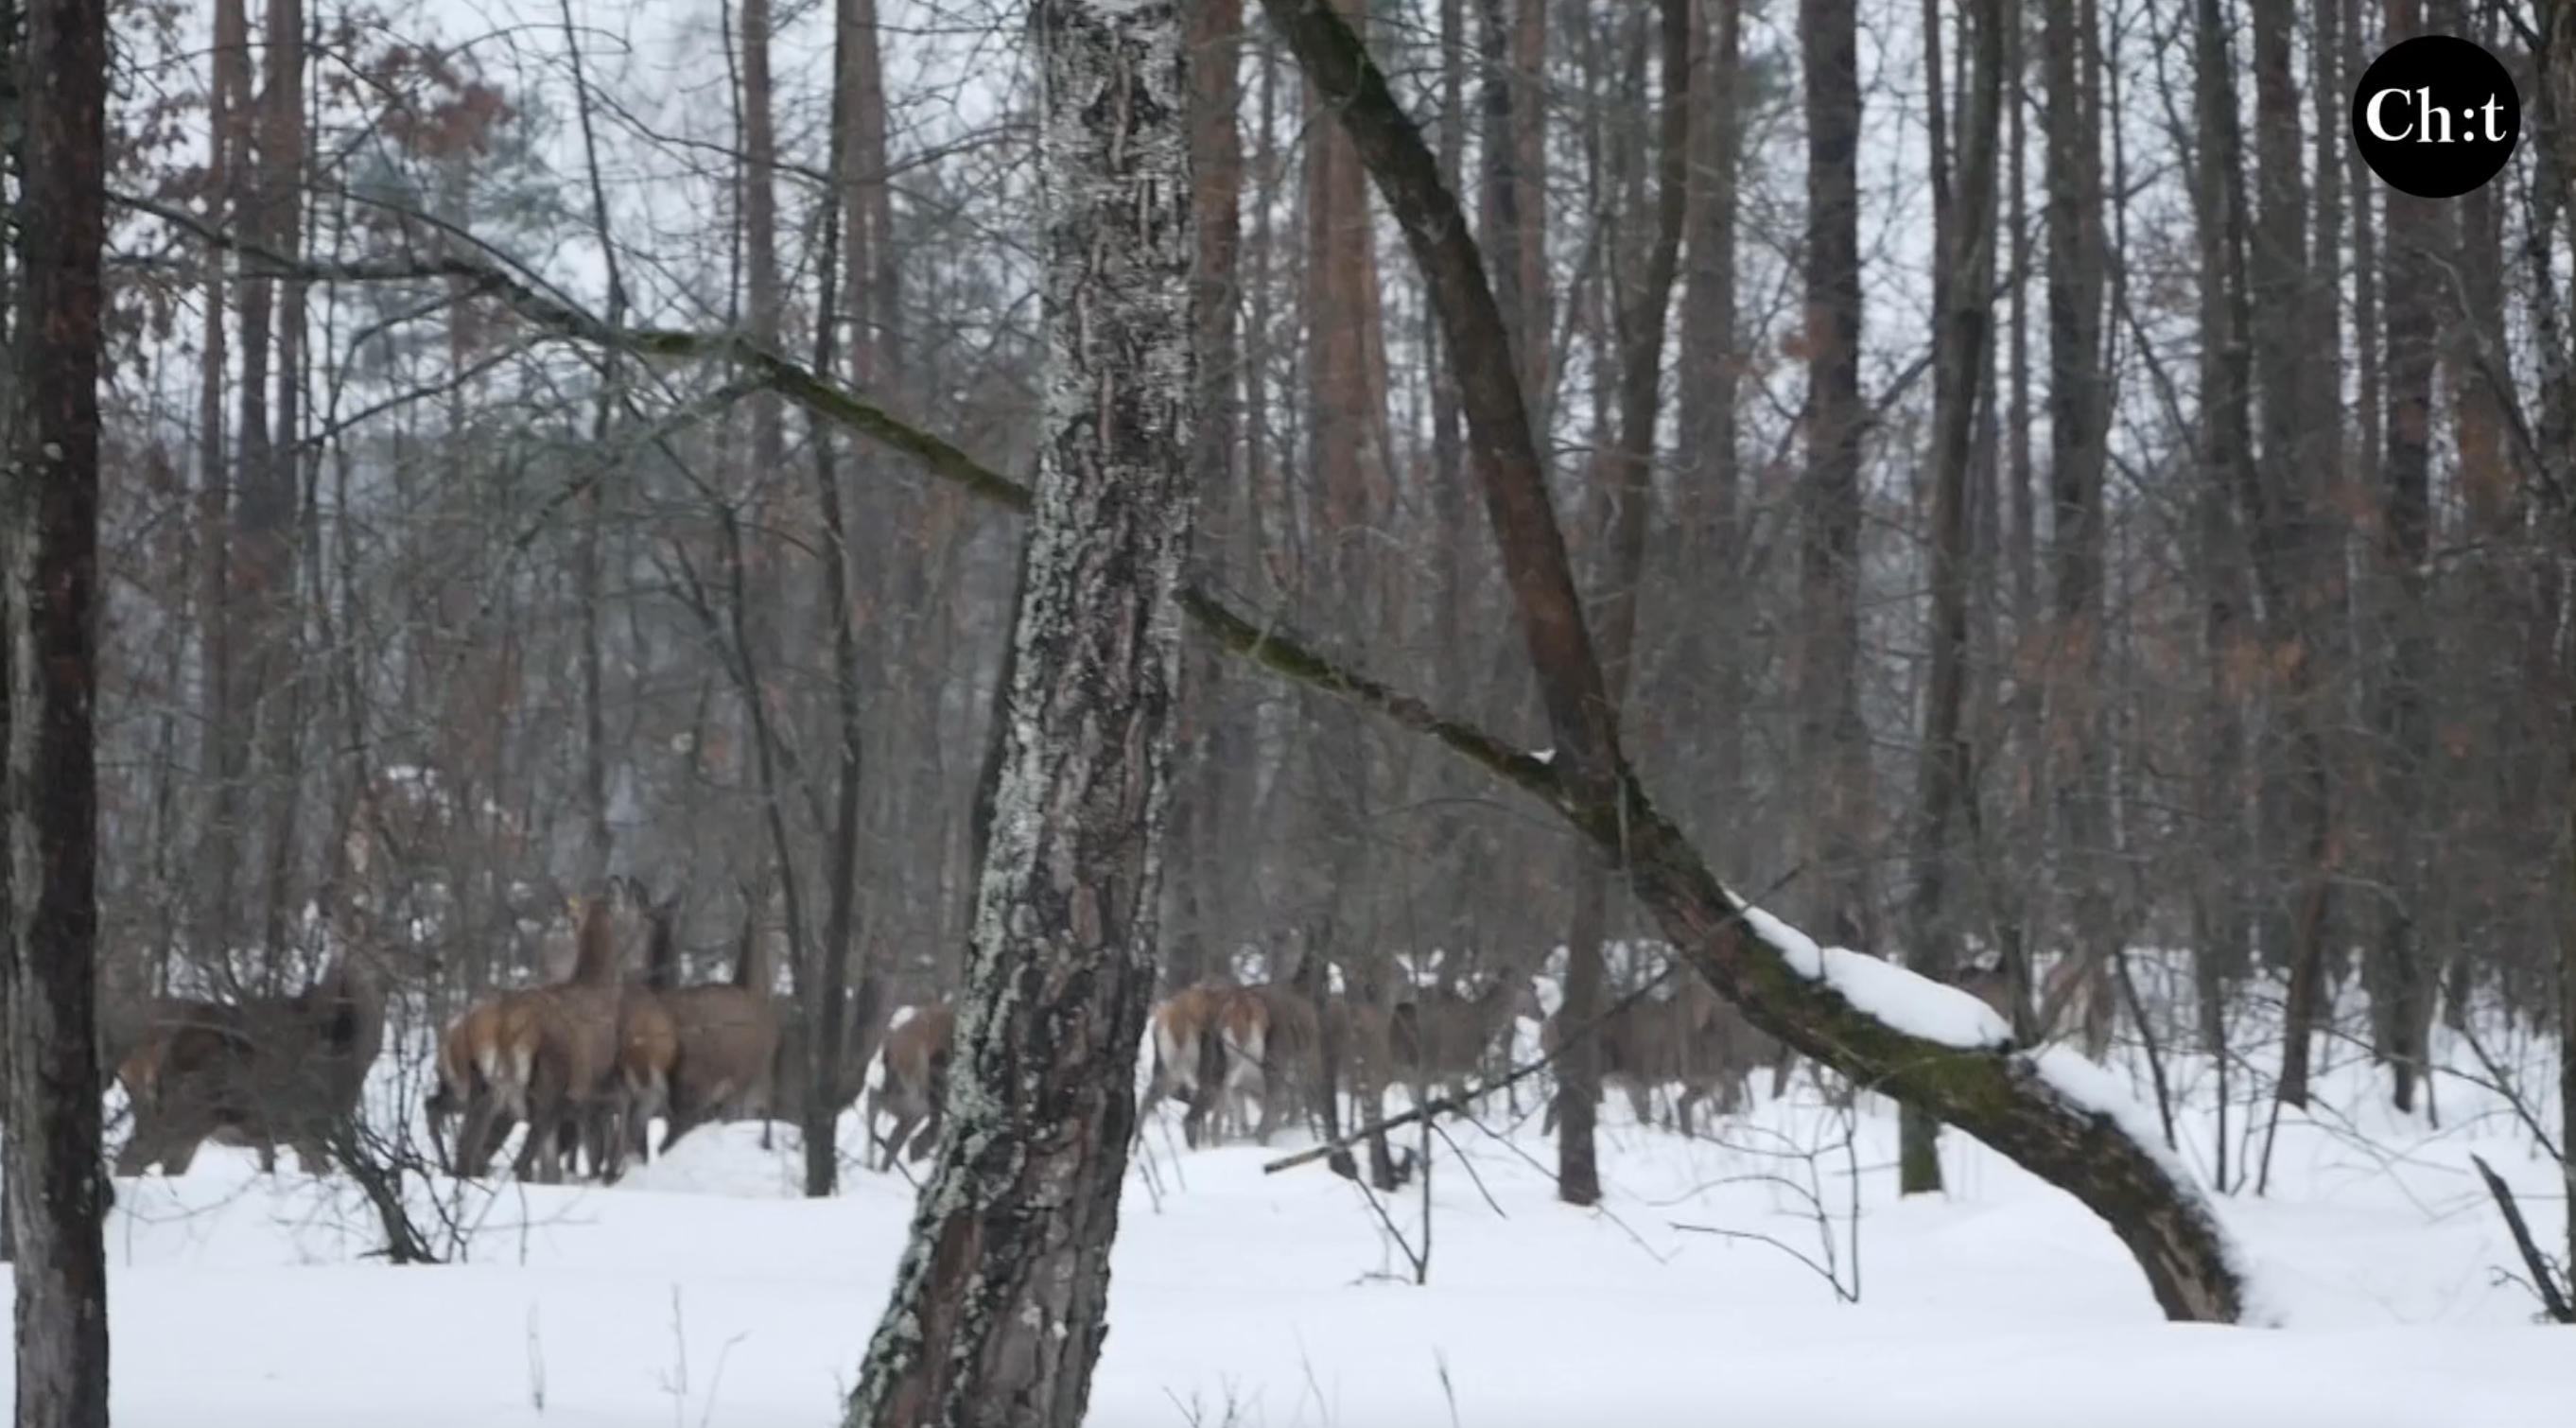 165 благородних оленів житимуть в лісах на Чернігівщині завдяки МРП «Єгер»